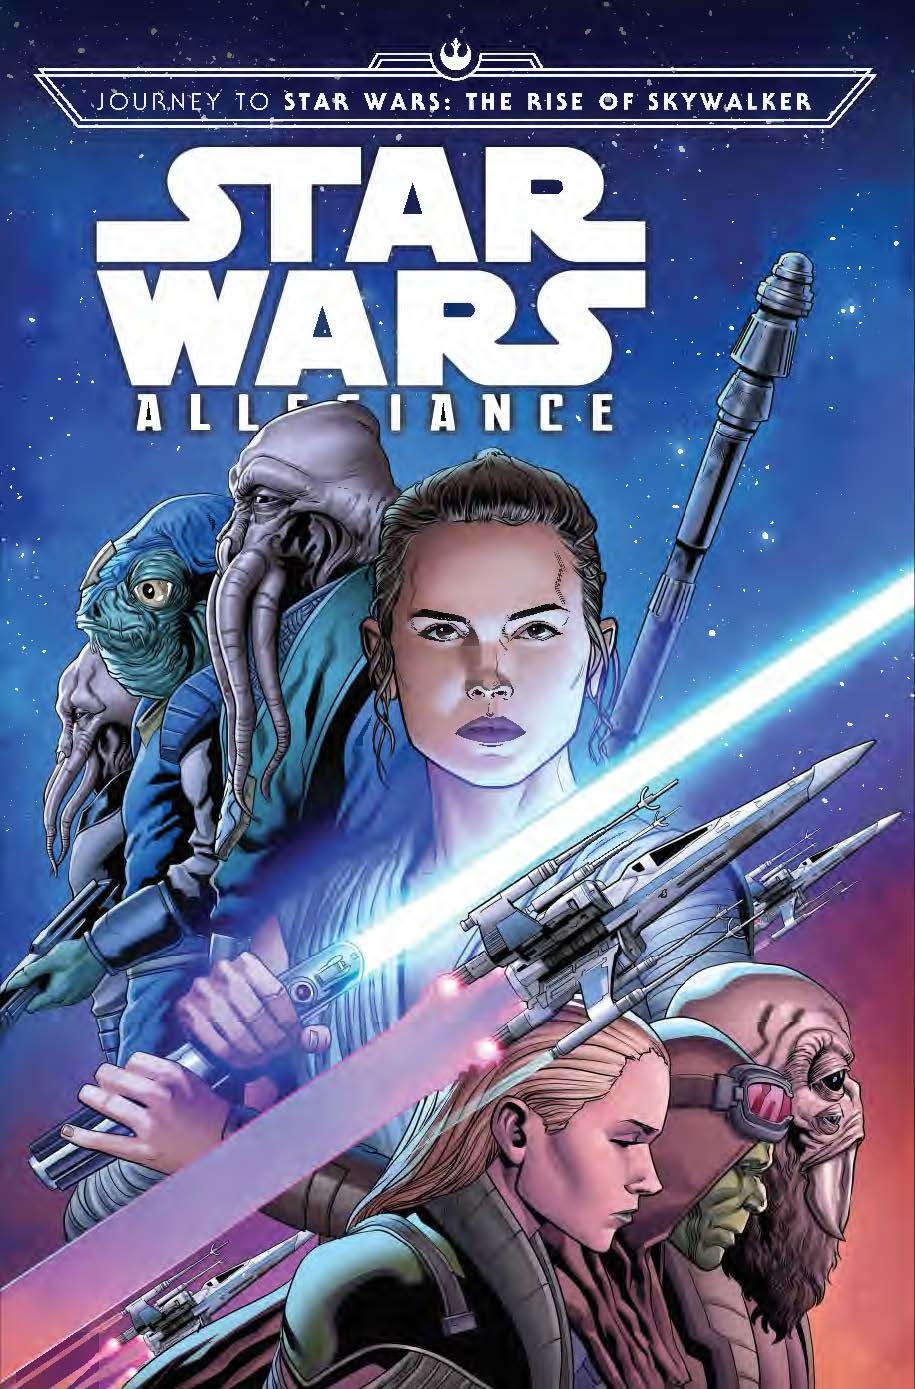 Allegiance #4 (Will Sliney Variant Cover) (30.10.2019)